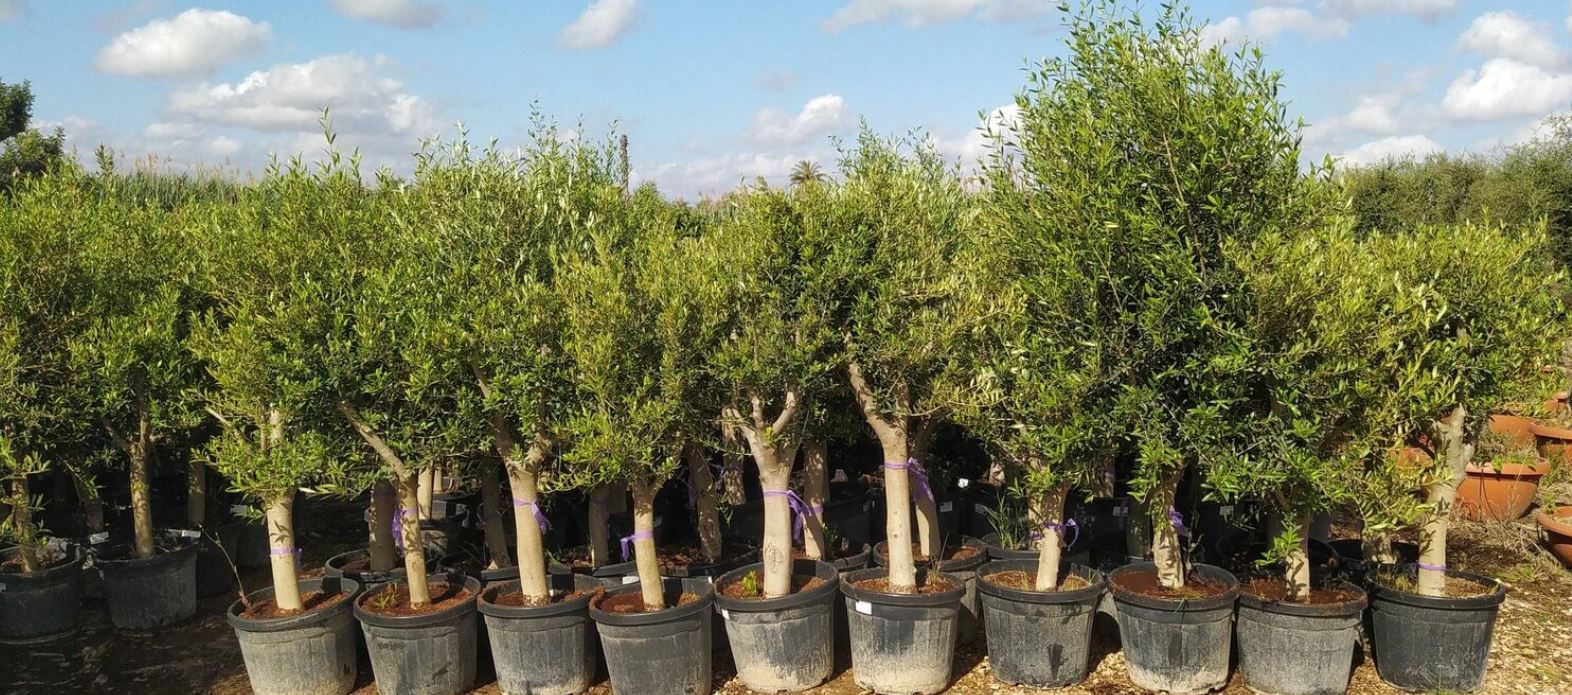 Olivenbaum 20 Jahre inkl. Topf in 160 180 cm für 99,99€ (statt 130€)